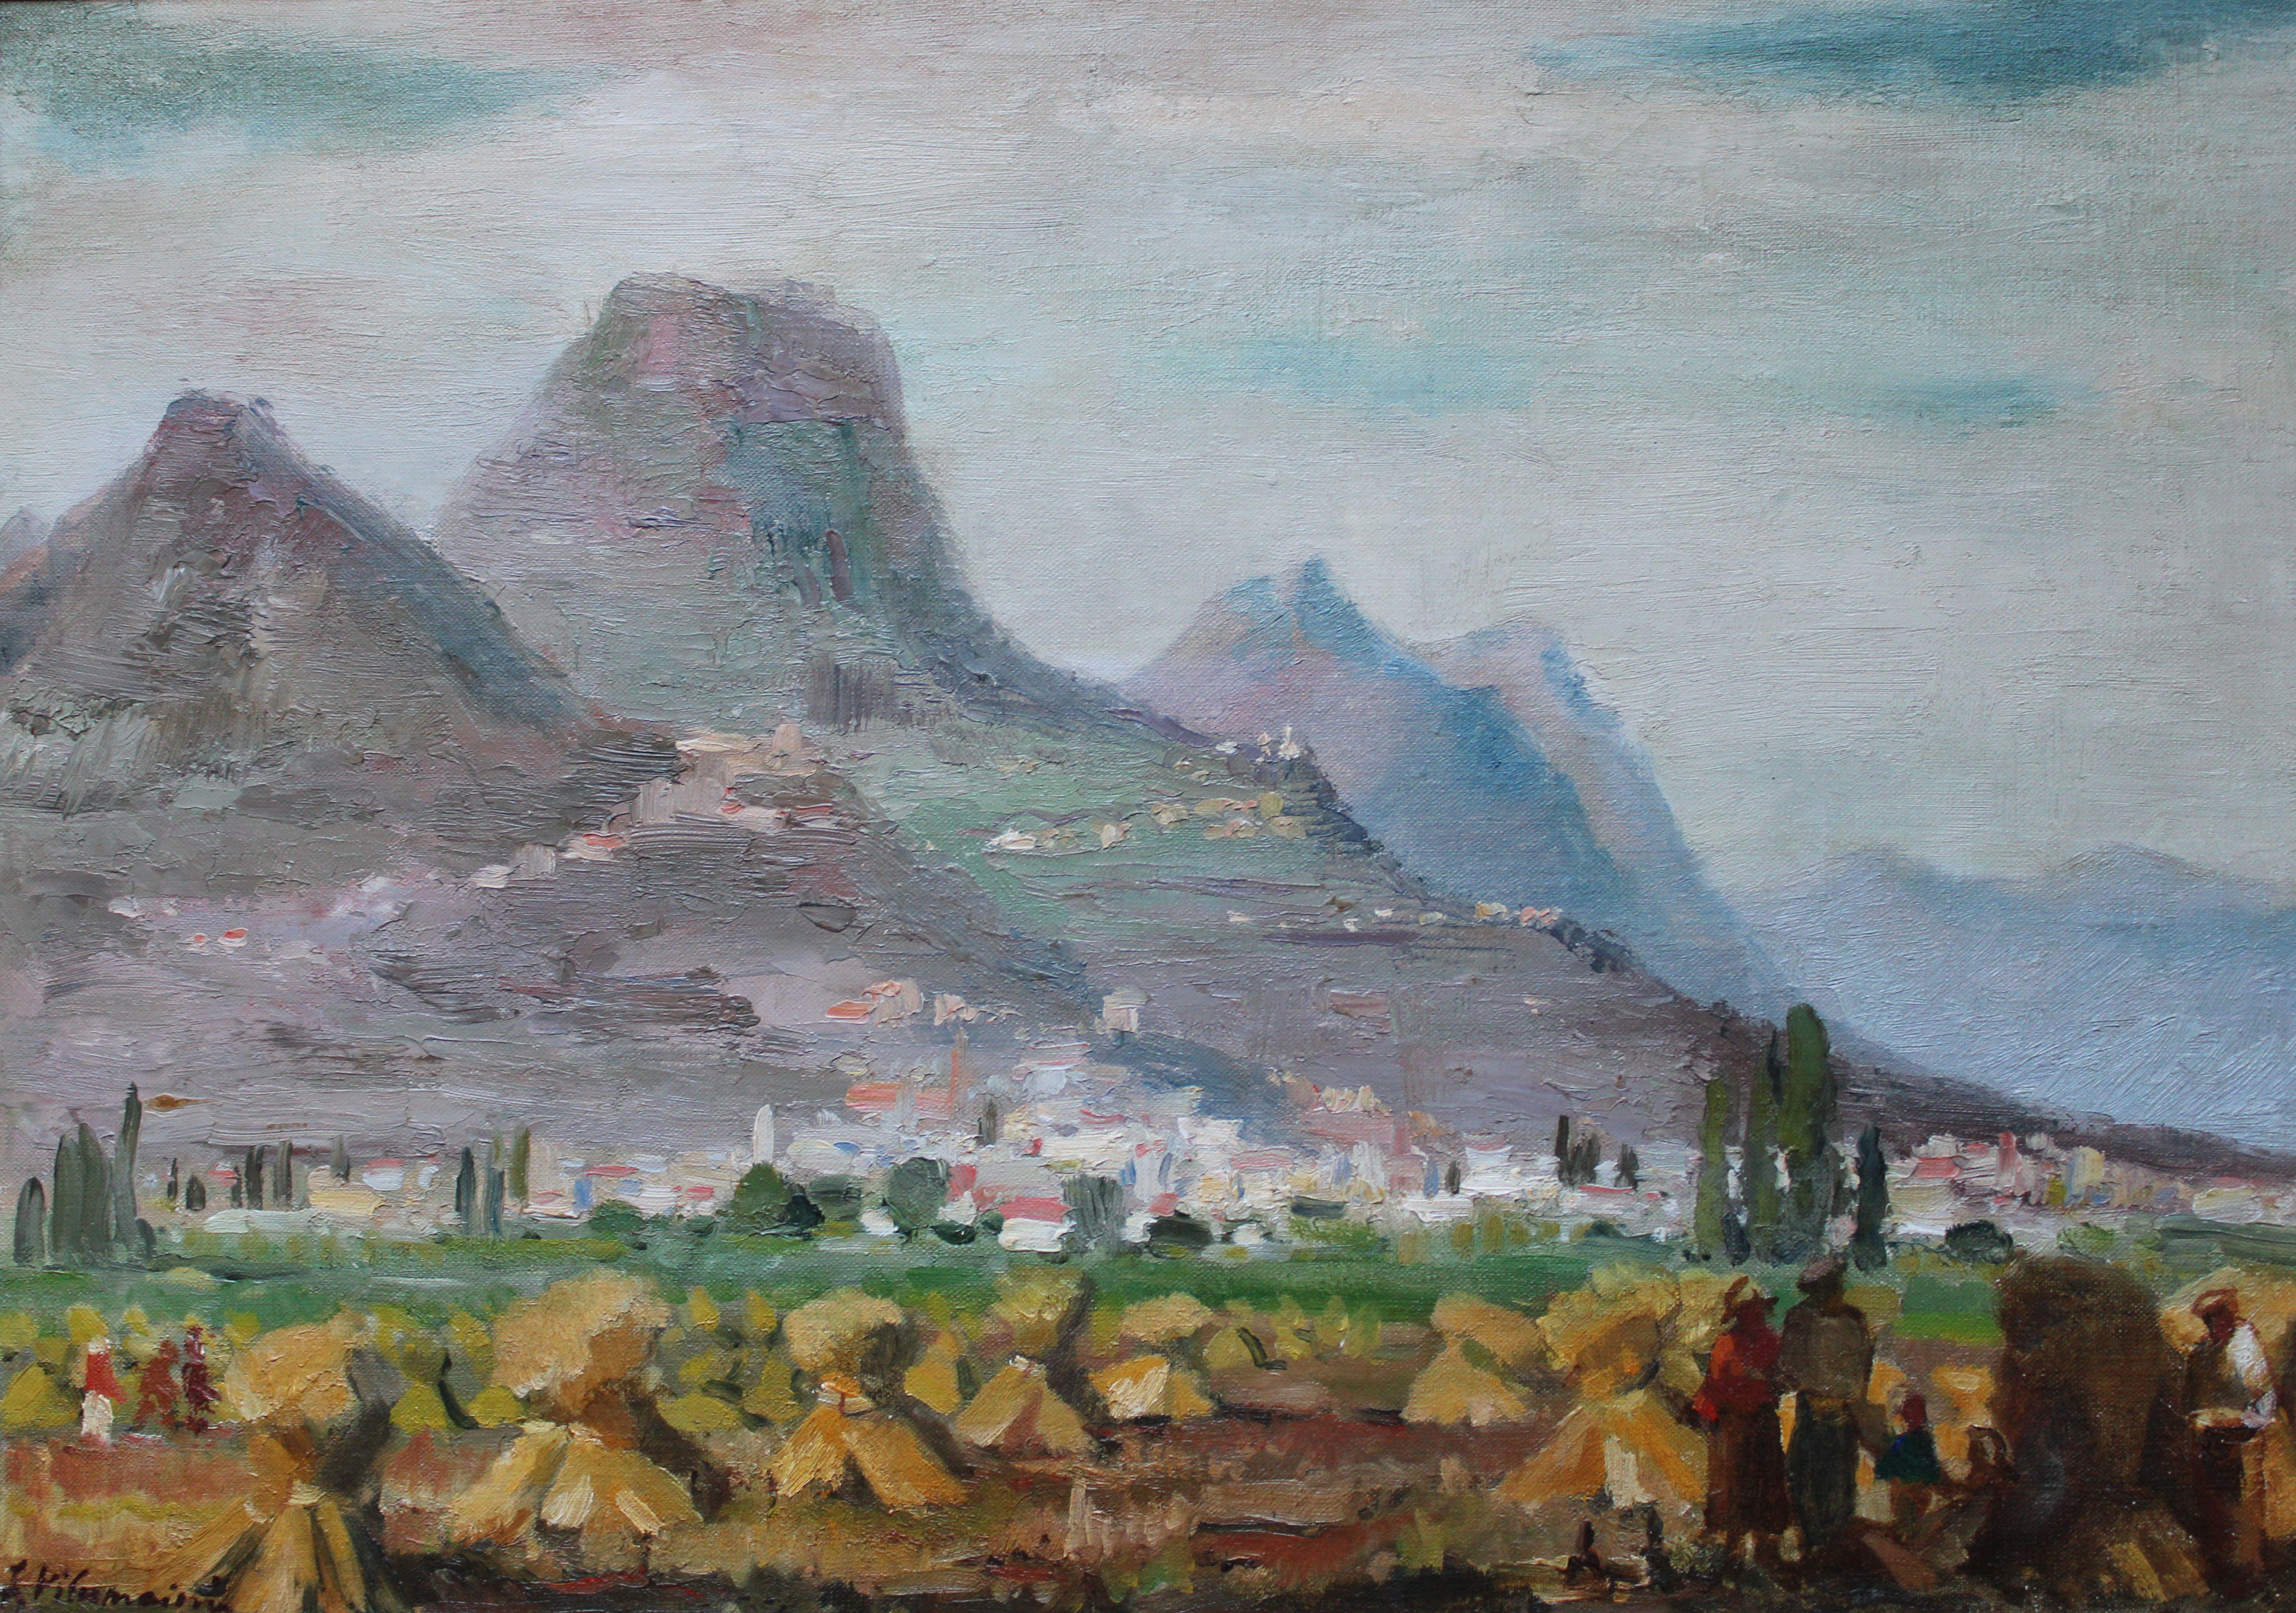 Paysage avec montagnes, sud de la France. Peinture à l'huile sur carton sur toile, 38 x53 cm